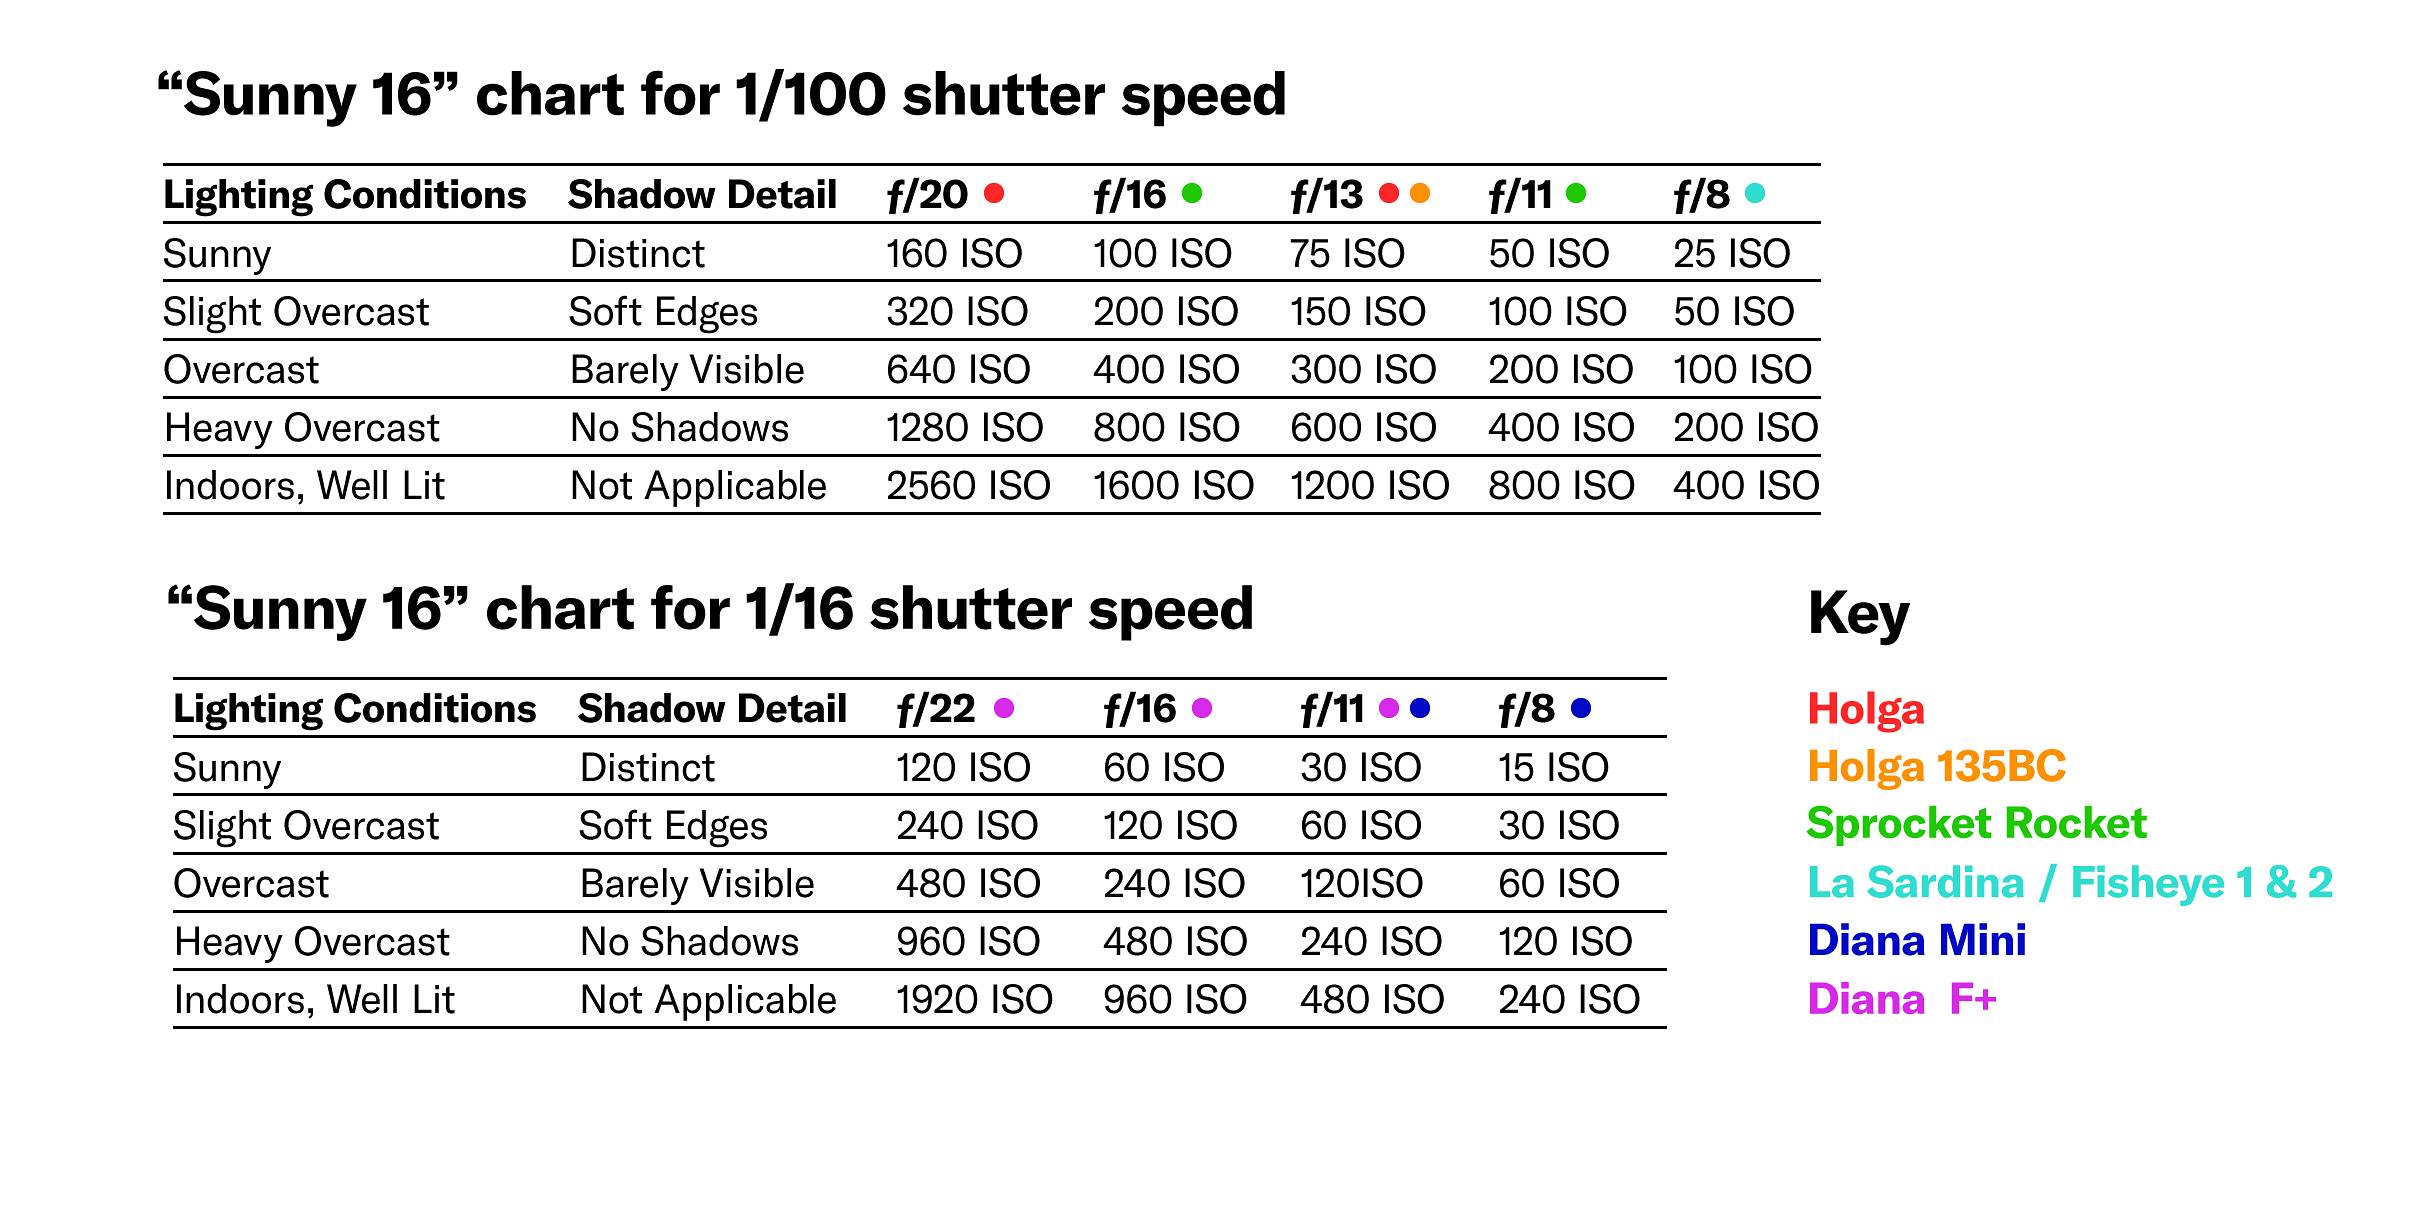 Shutter Speed Stops Chart